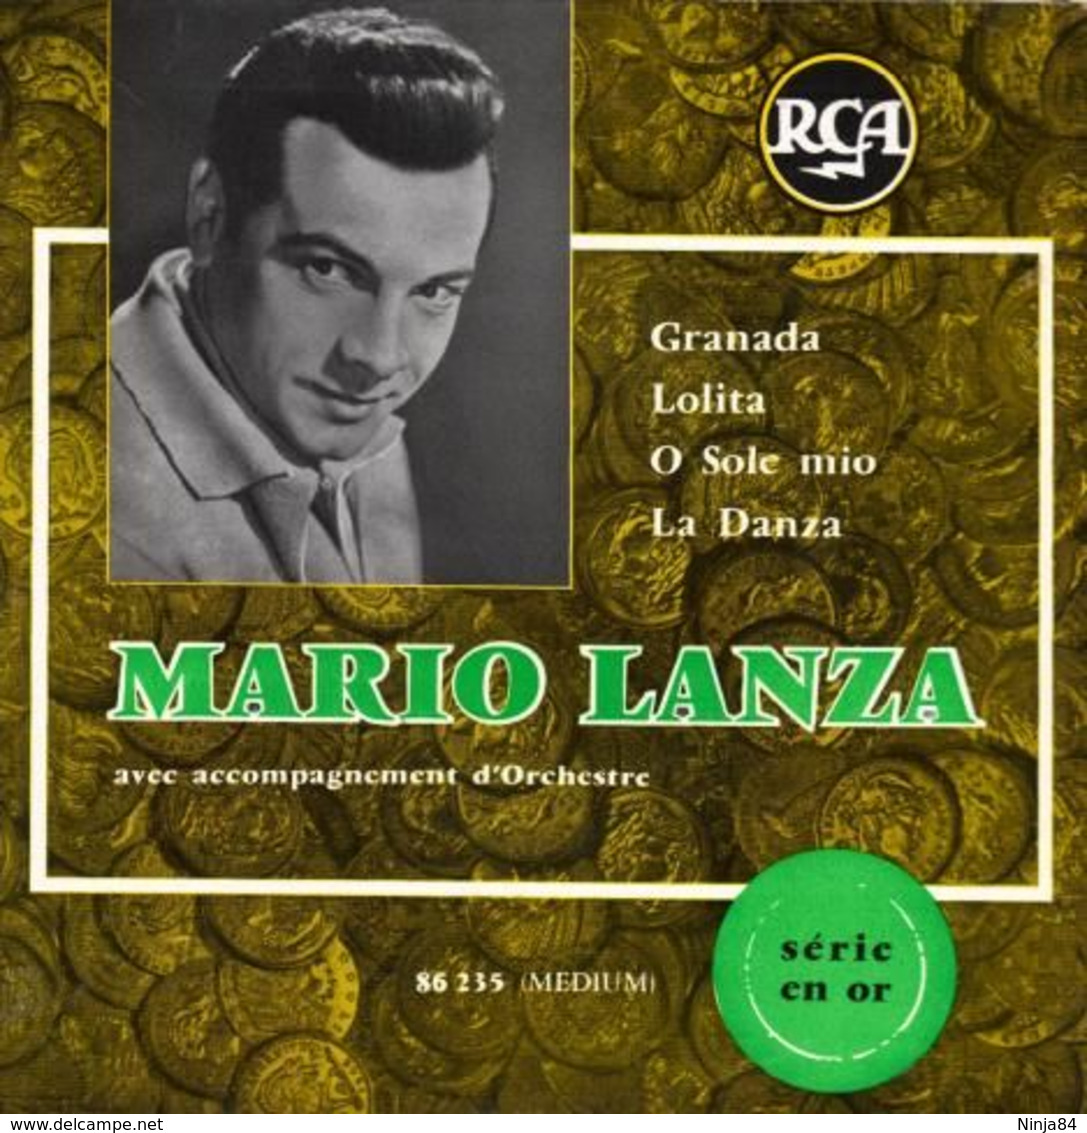 EP 45 RPM (7")  Mario Lanza  "  Granada  " - Klassik